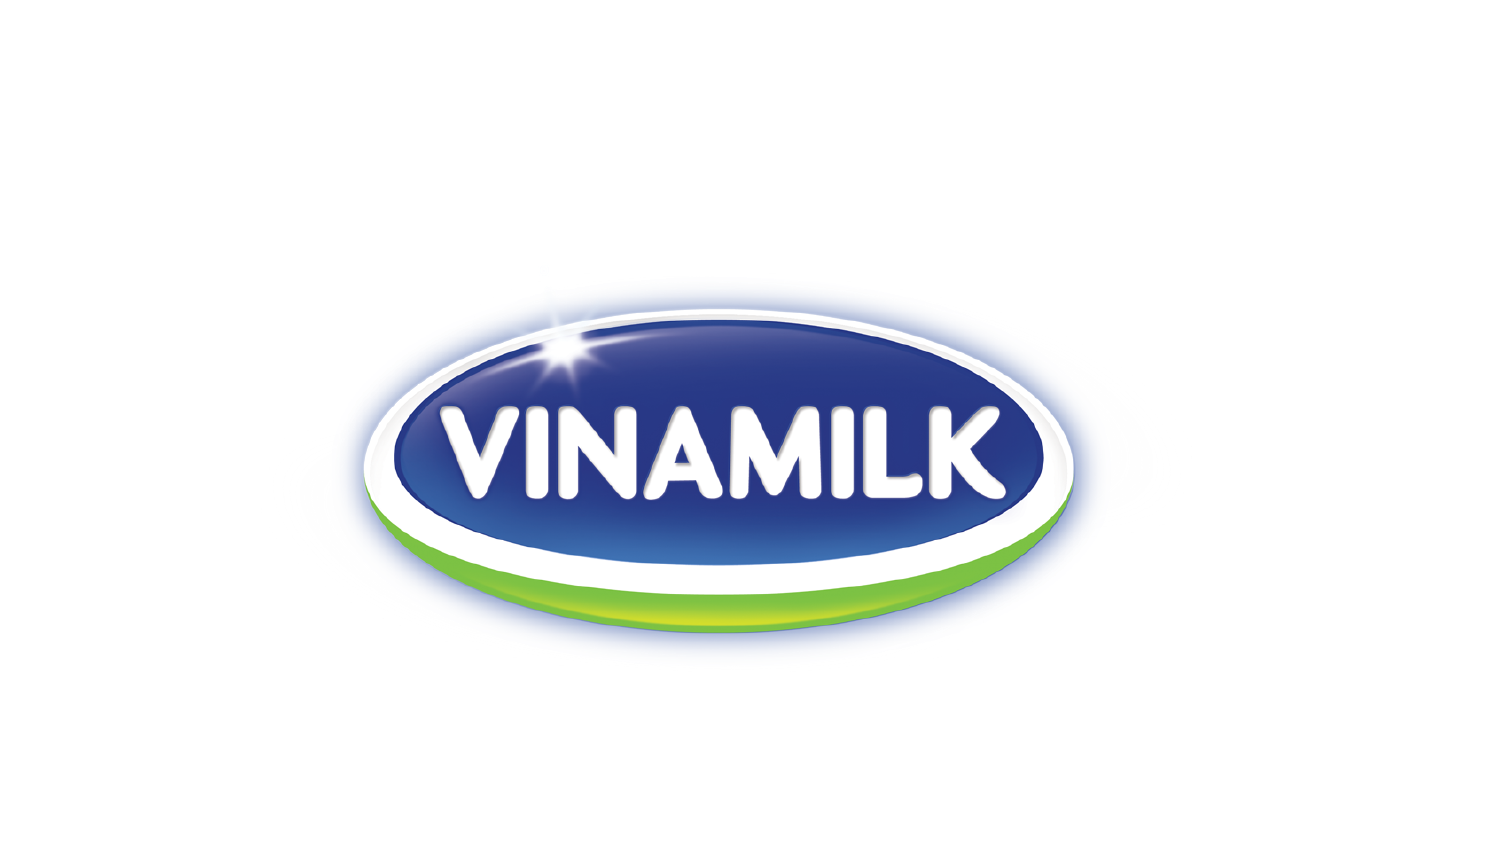 Vinamilk Logo Png Hdpng.com 1485 - Vinamilk, Transparent background PNG HD thumbnail